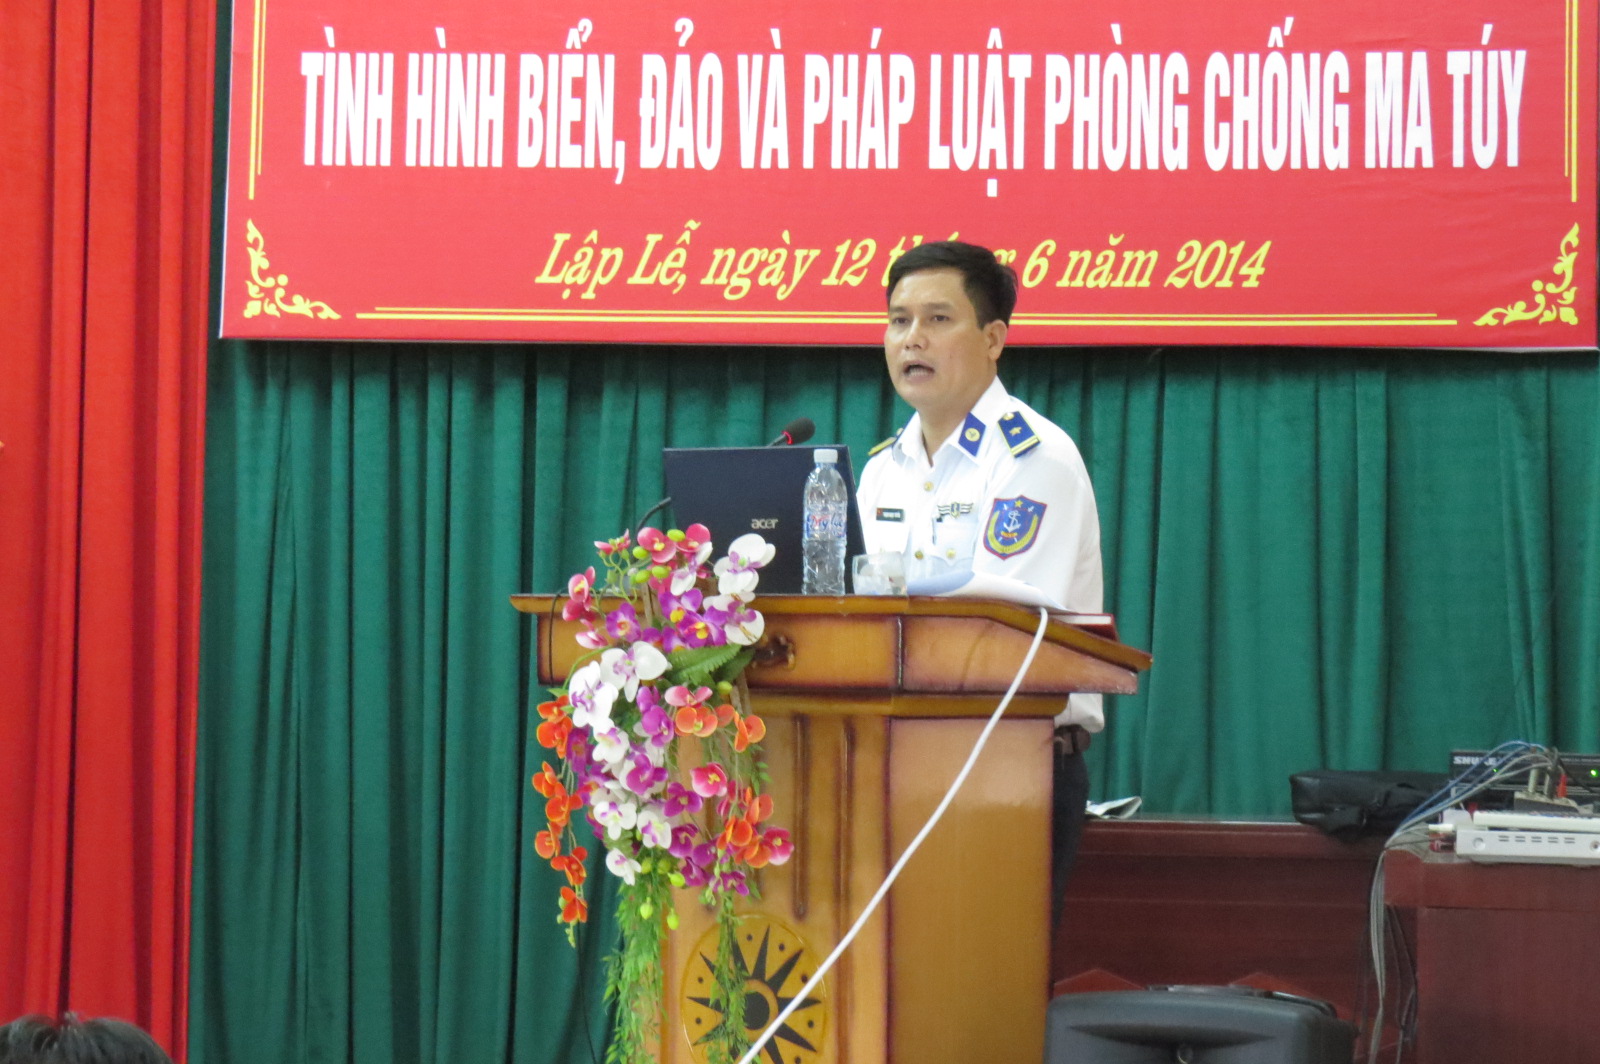 Thiếu tá Phạm Ngọc Tuyển phát biểu tại hội nghị